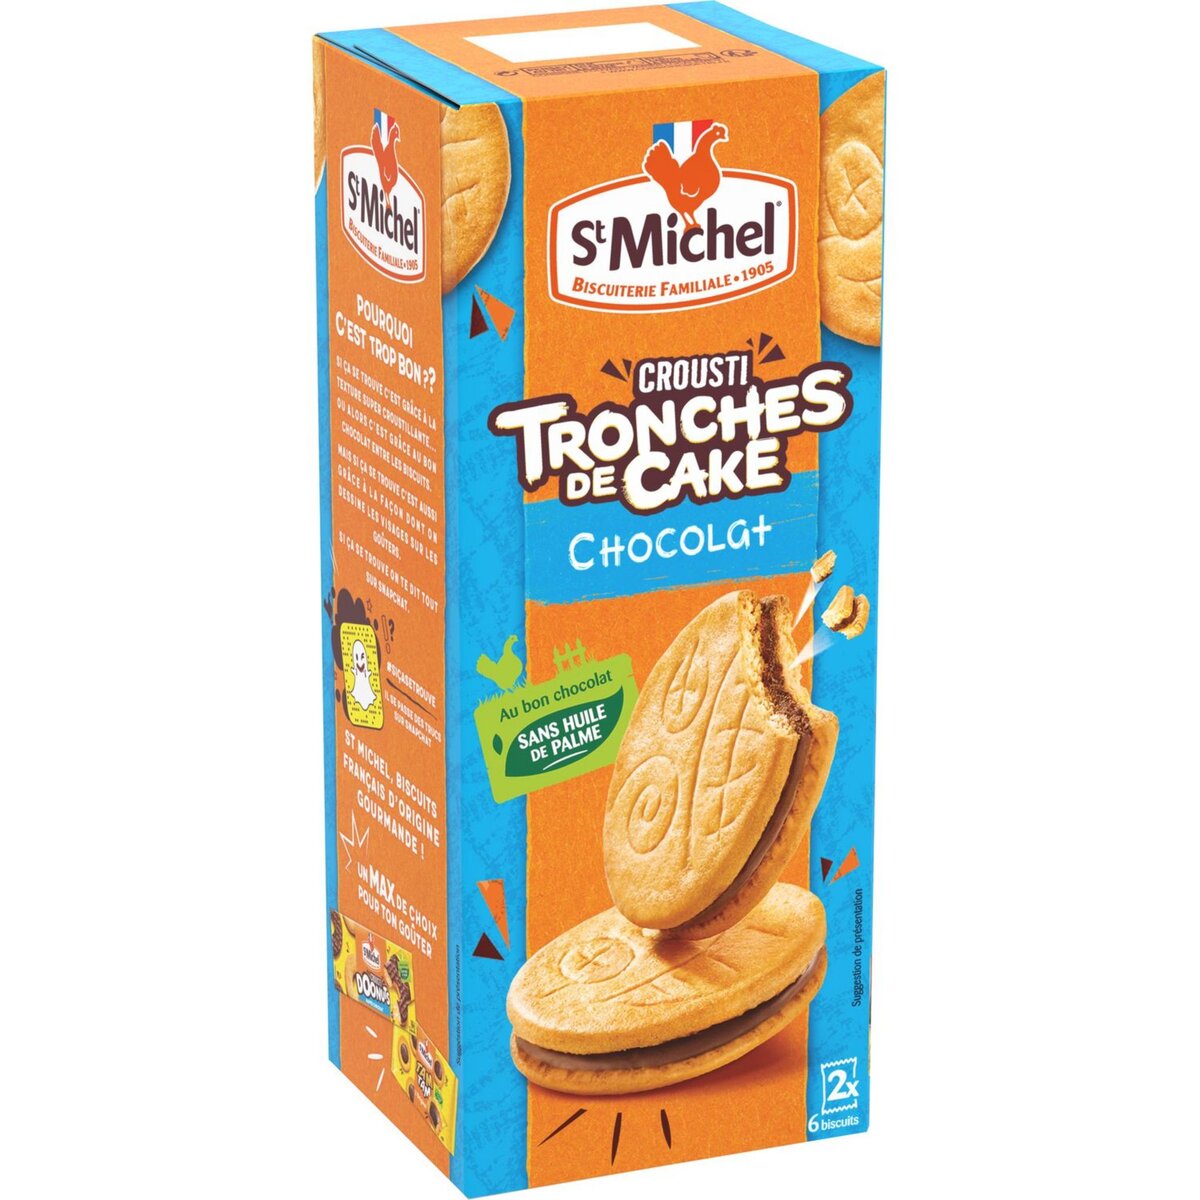 ST MICHEL Crousti tronches de cake chocolat sans huile de palme, sachets fraîcheur 2x6 biscuits 228g